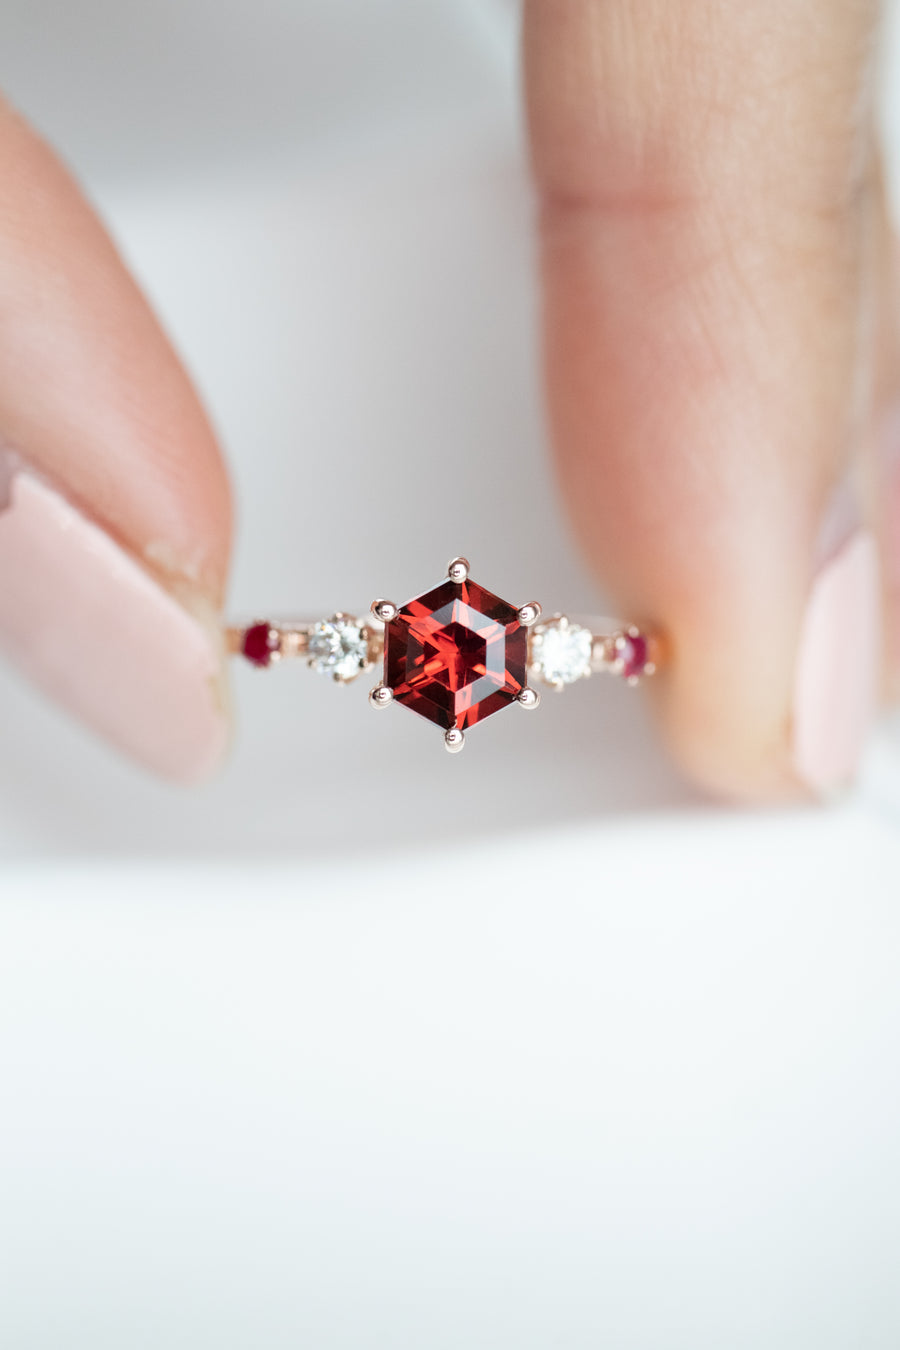 ~0.66carat Red Garnet & 0.08carat Natural Diamonds 14K Rose Gold Ring